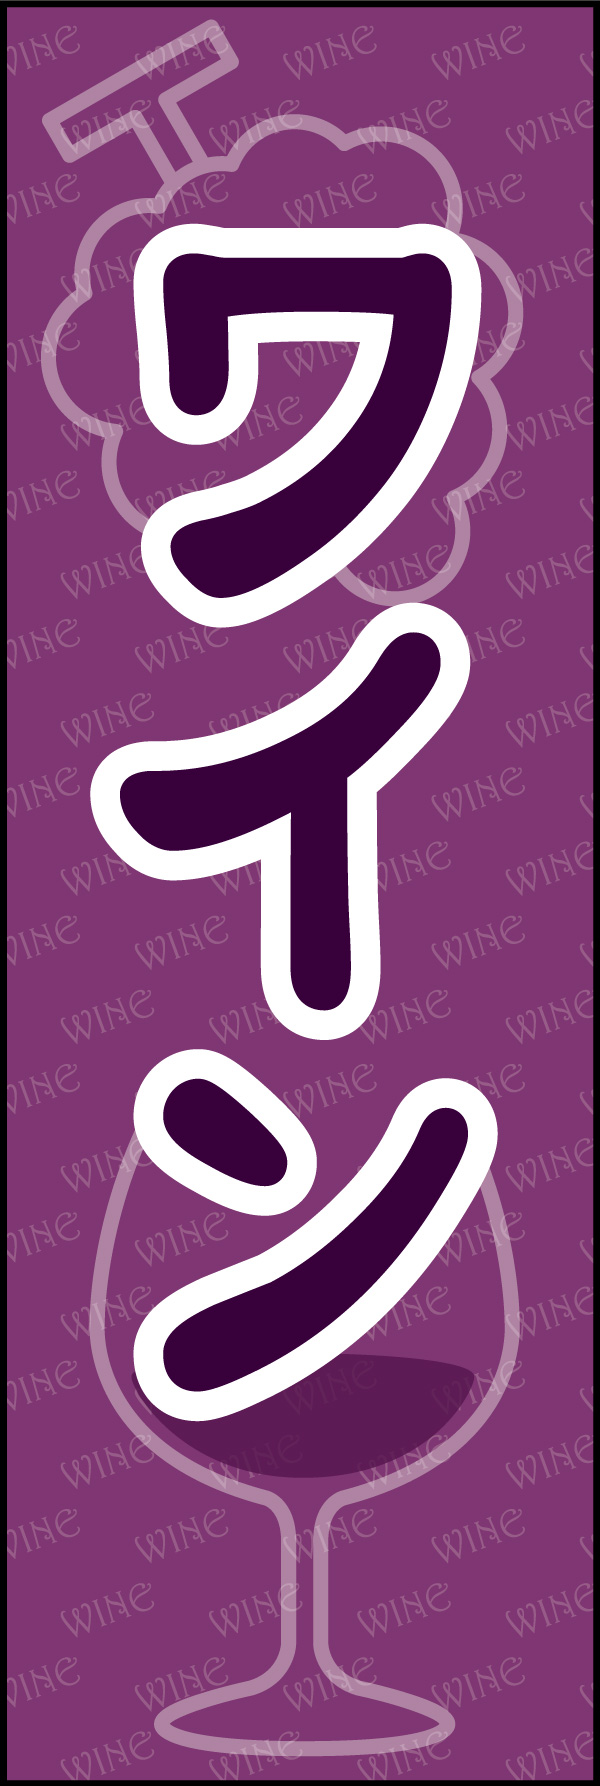 ワイン 05 「ワイン」ののぼりです。可愛らしいデザインにしました。(Y.M)